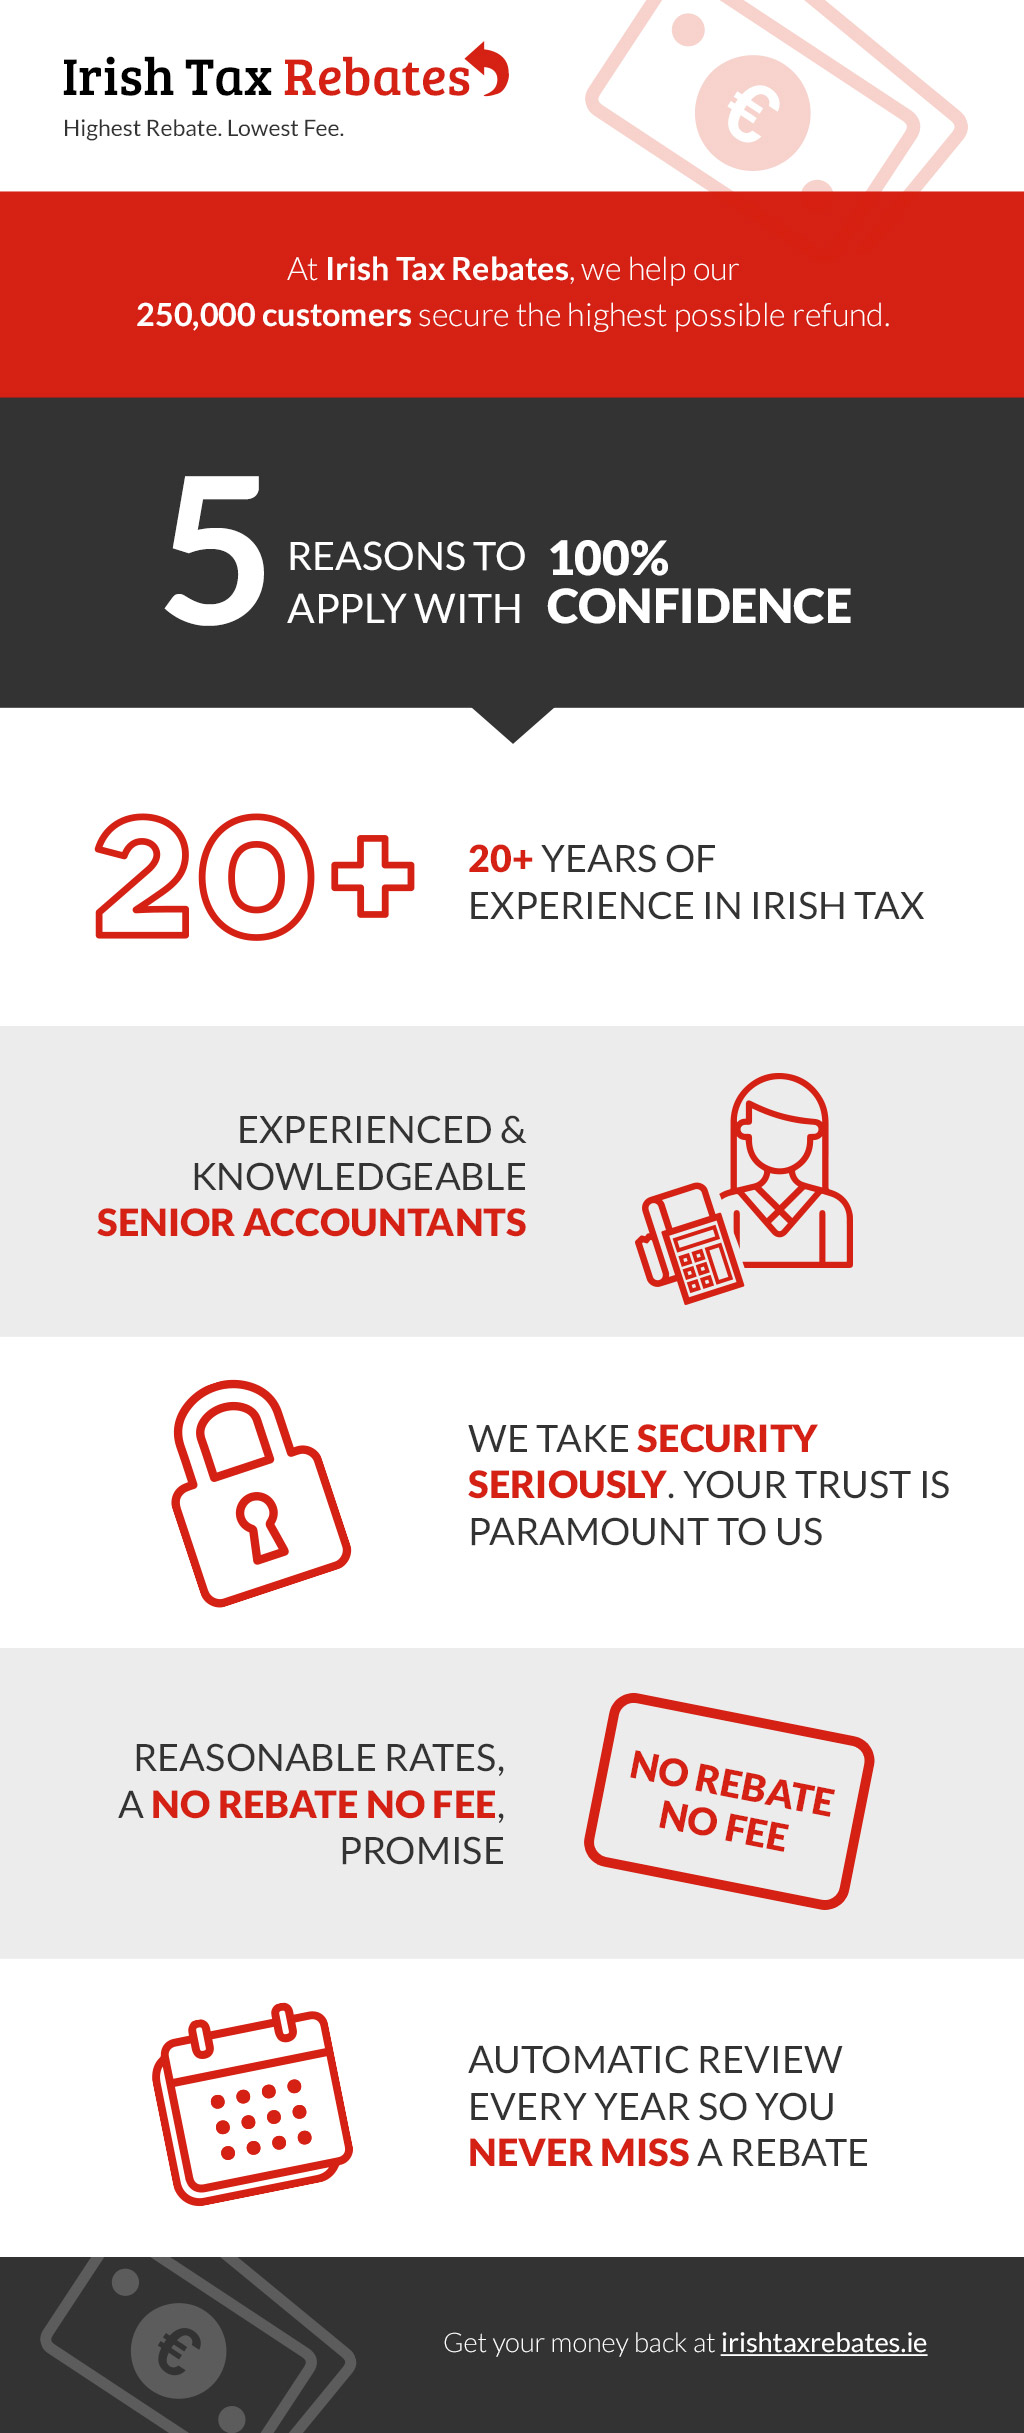 Irish Tax Rebates Ie